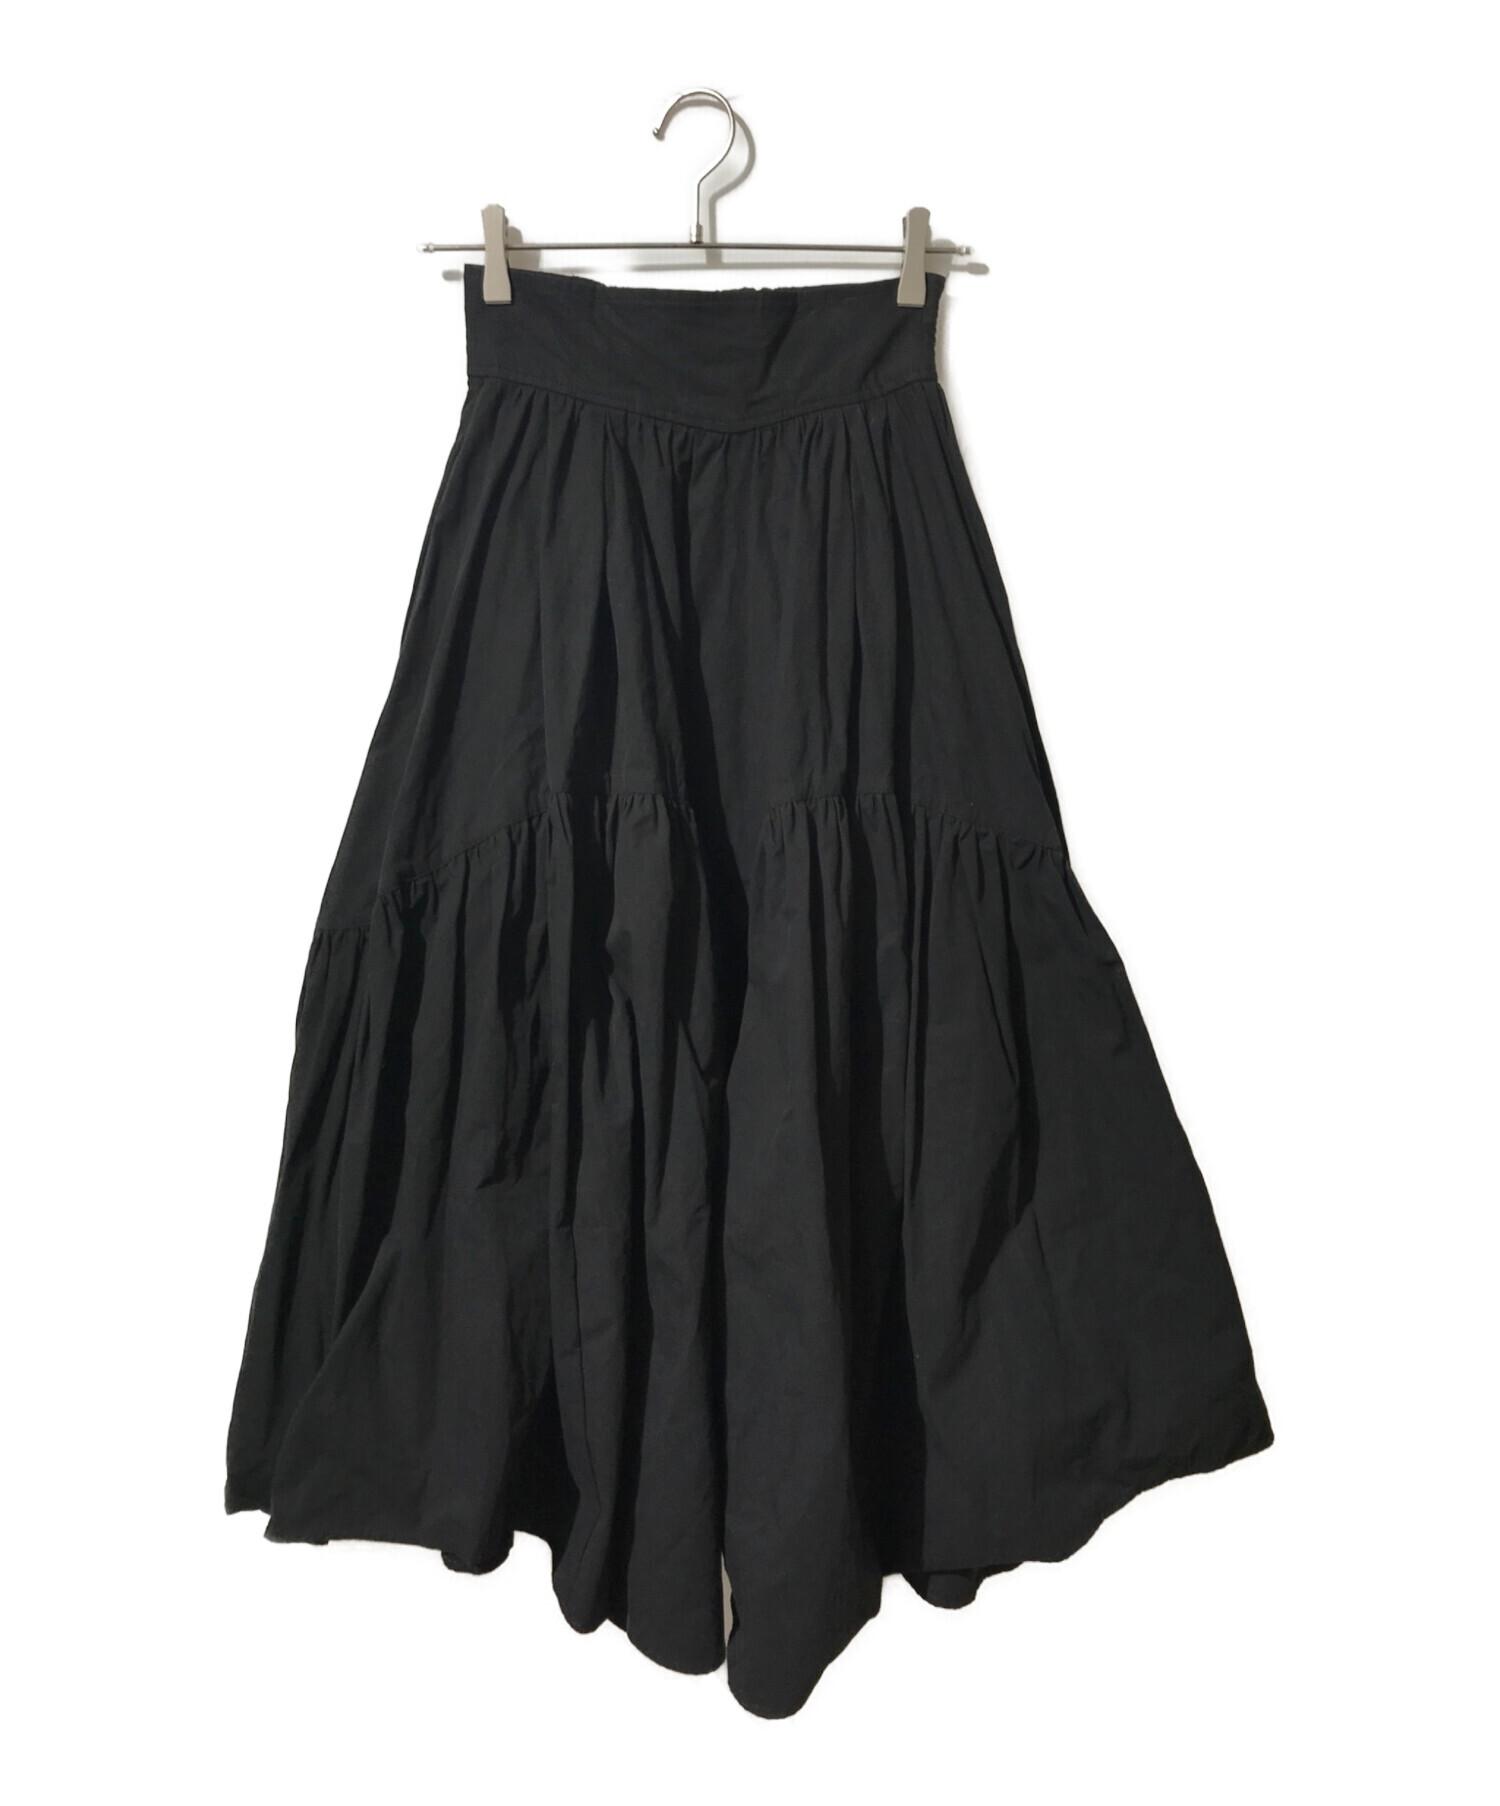 DOUBLE STANDARD CLOTHING (ダブルスタンダードクロージング) ギャザーロングスカート ブラック サイズ:36